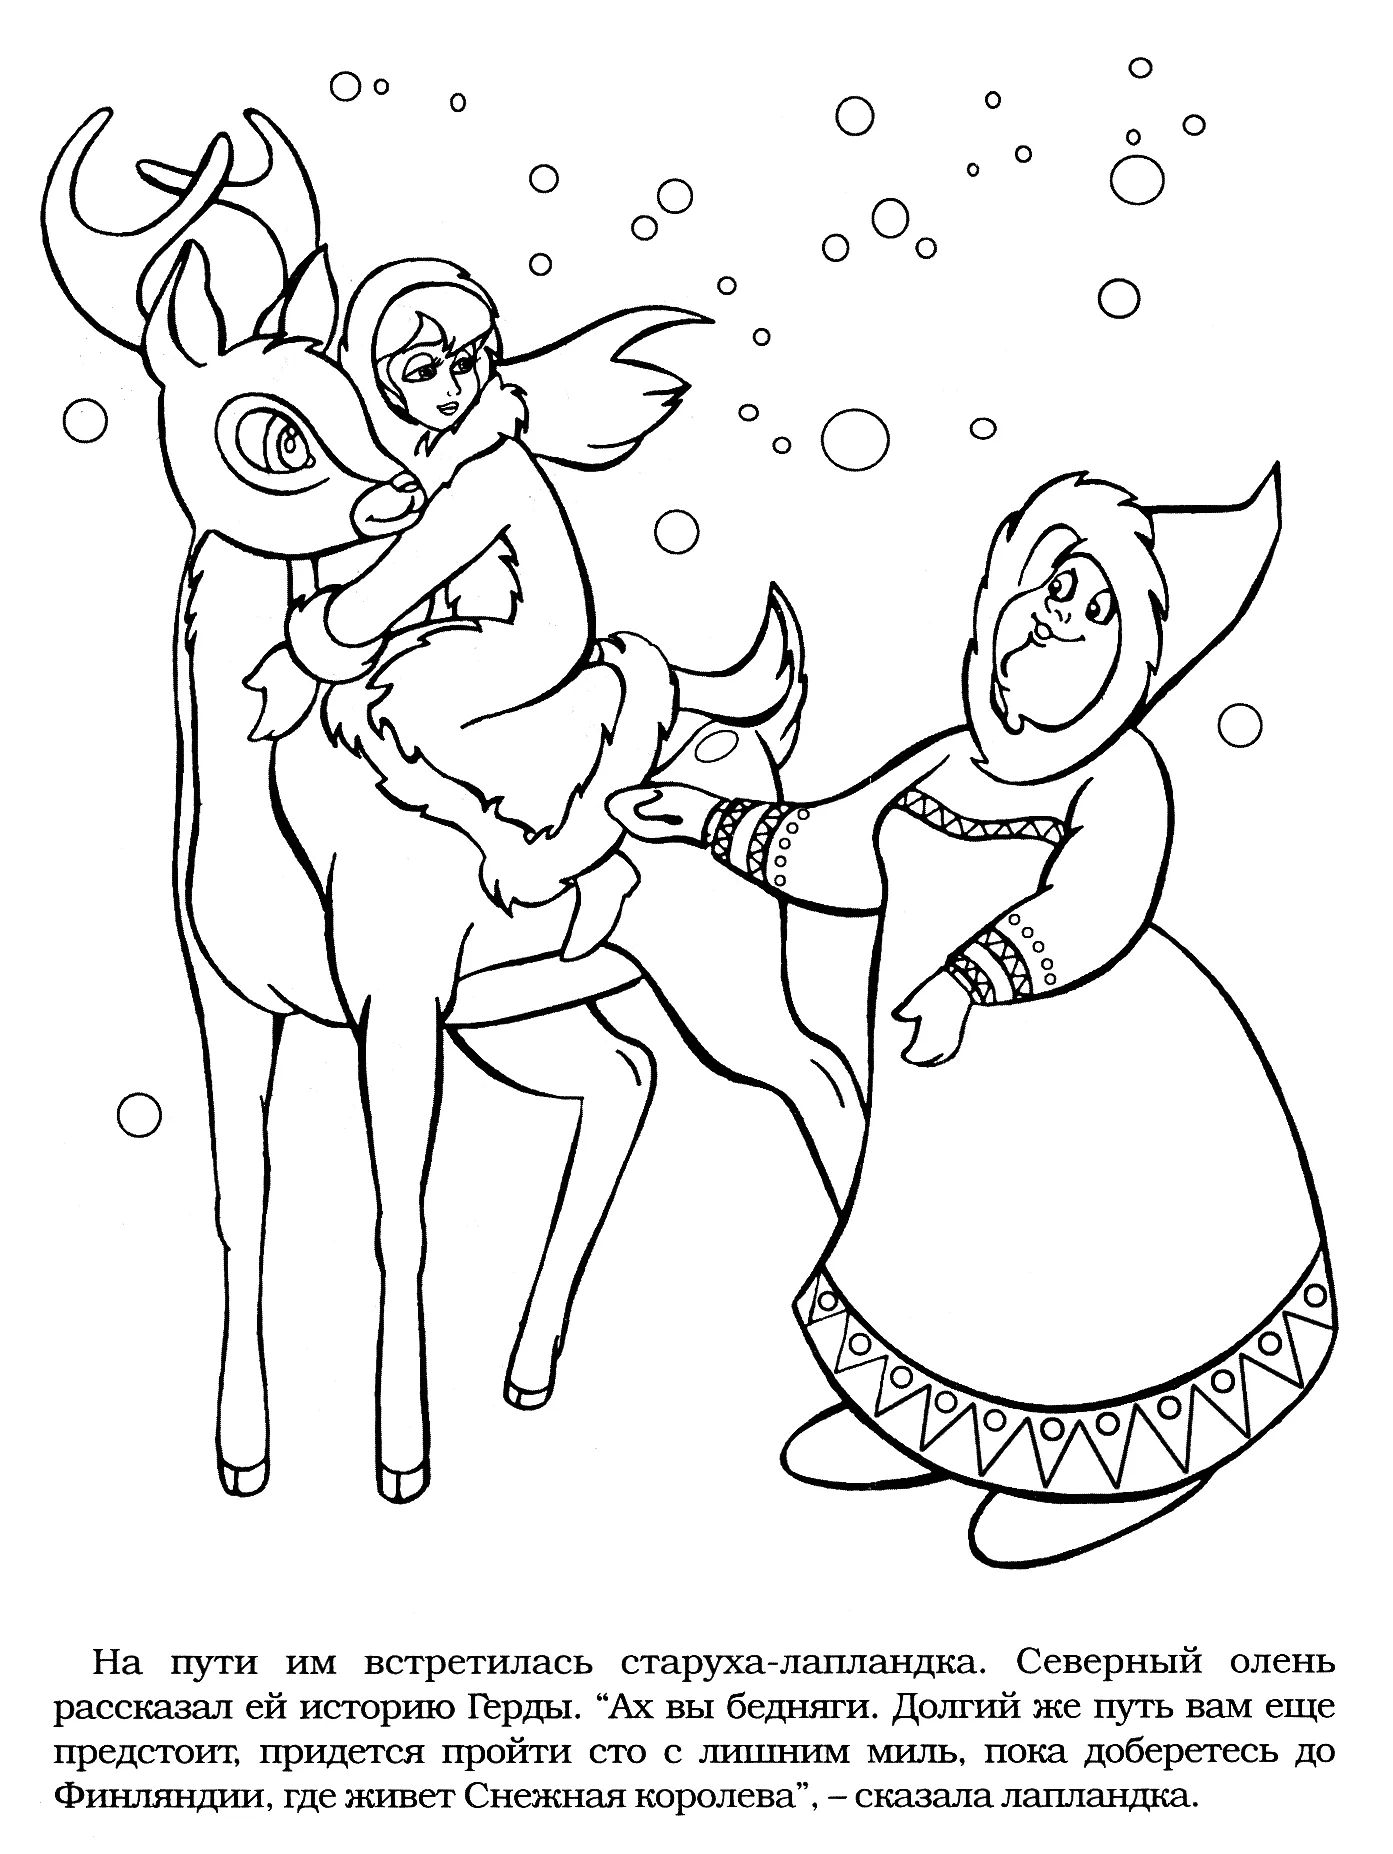 Нарисовать иллюстрацию к сказке снежная королева. Раскраска снежной королевы из сказки Снежная Королева.